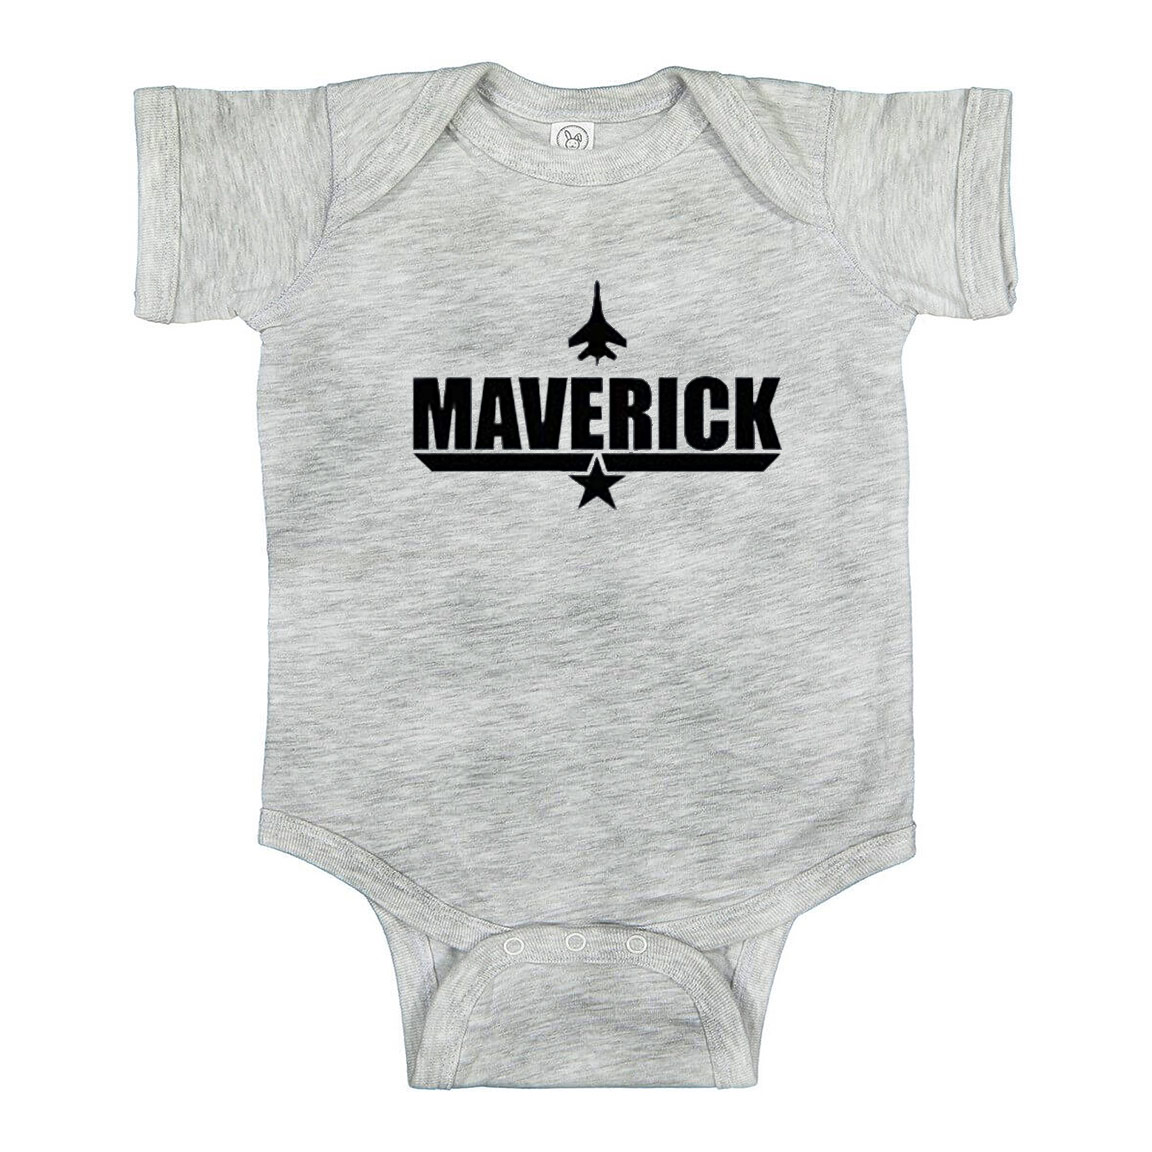 Maverick Baby Onesie From Top Gun